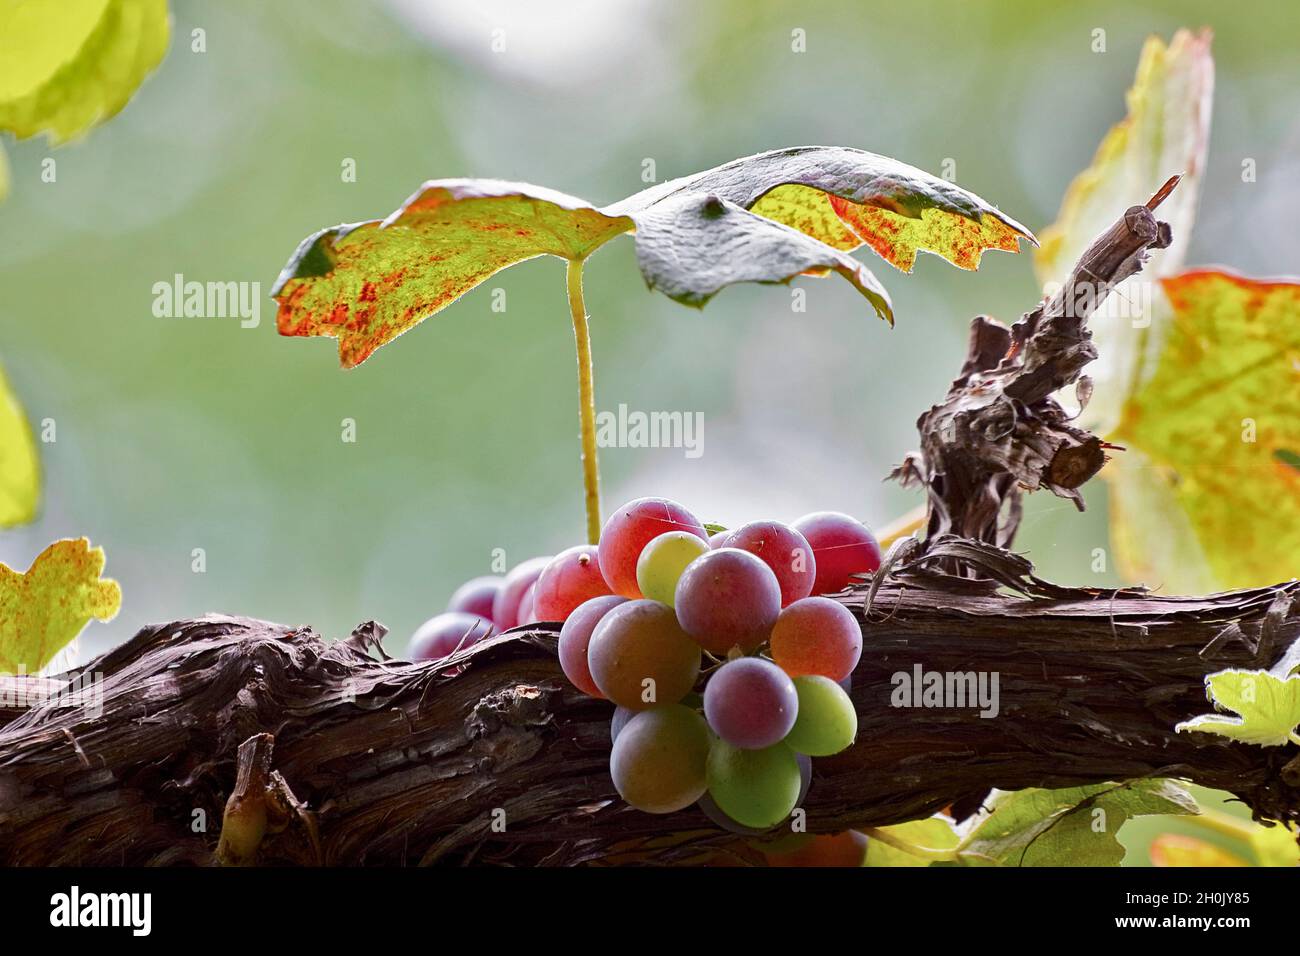 grape-vine, vine (Vitis vinifera), grapes in autumn, Germany Stock Photo